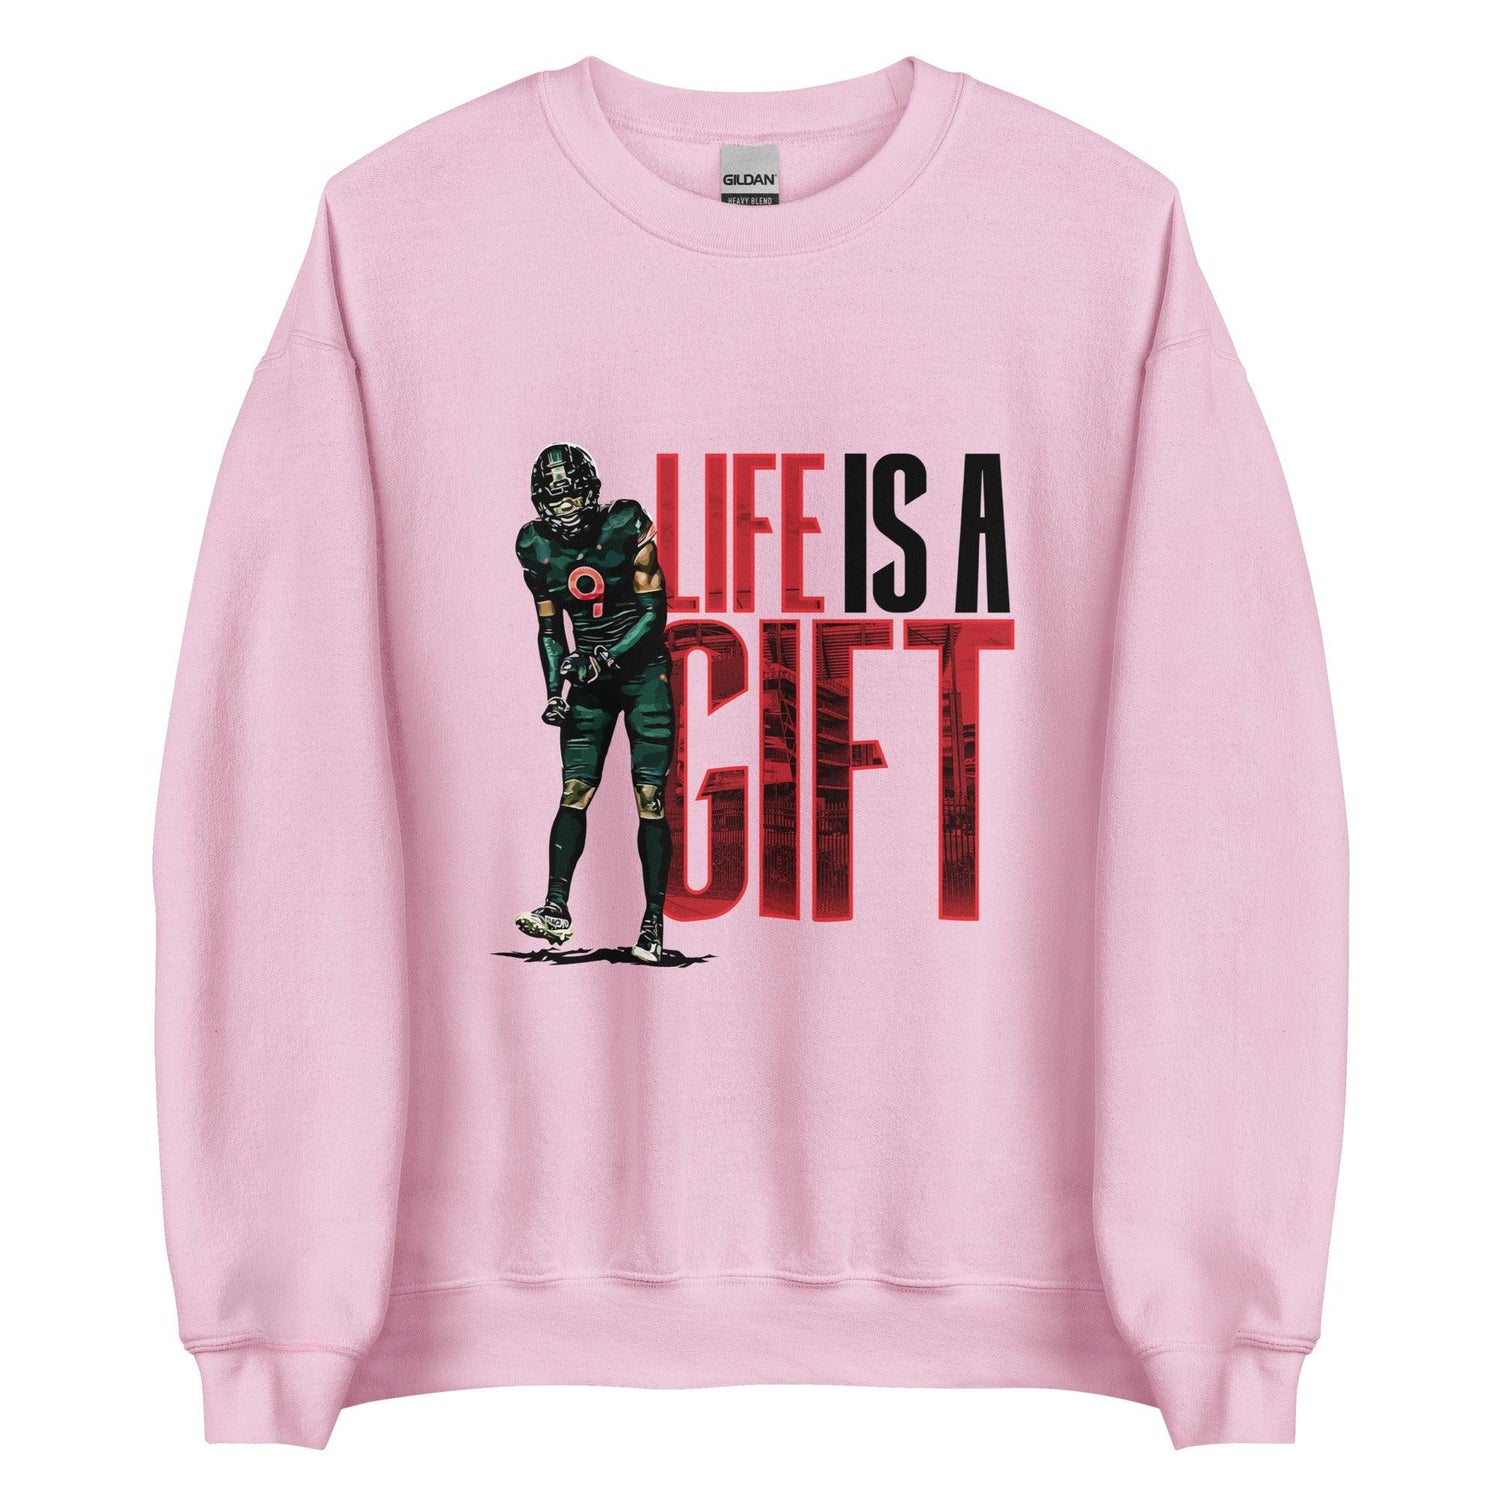 Avery Huff Jr. “Gifted” Sweatshirt - Fan Arch